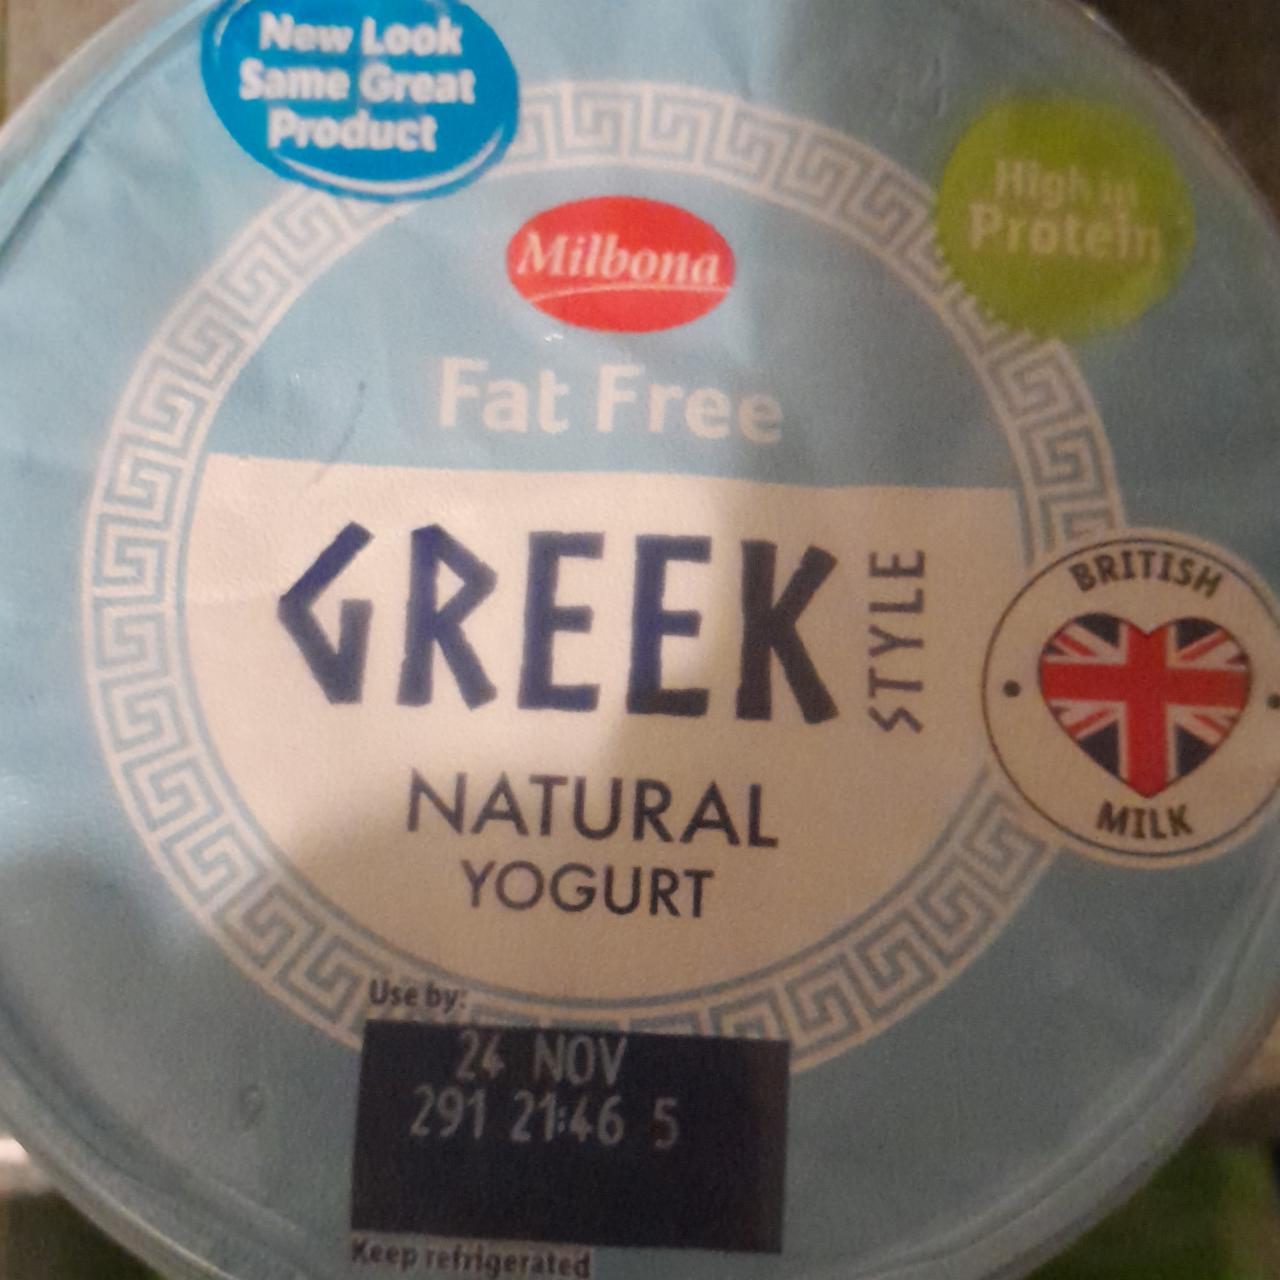 Zdjęcia - Fat free greek style natural yogurt MIlbona